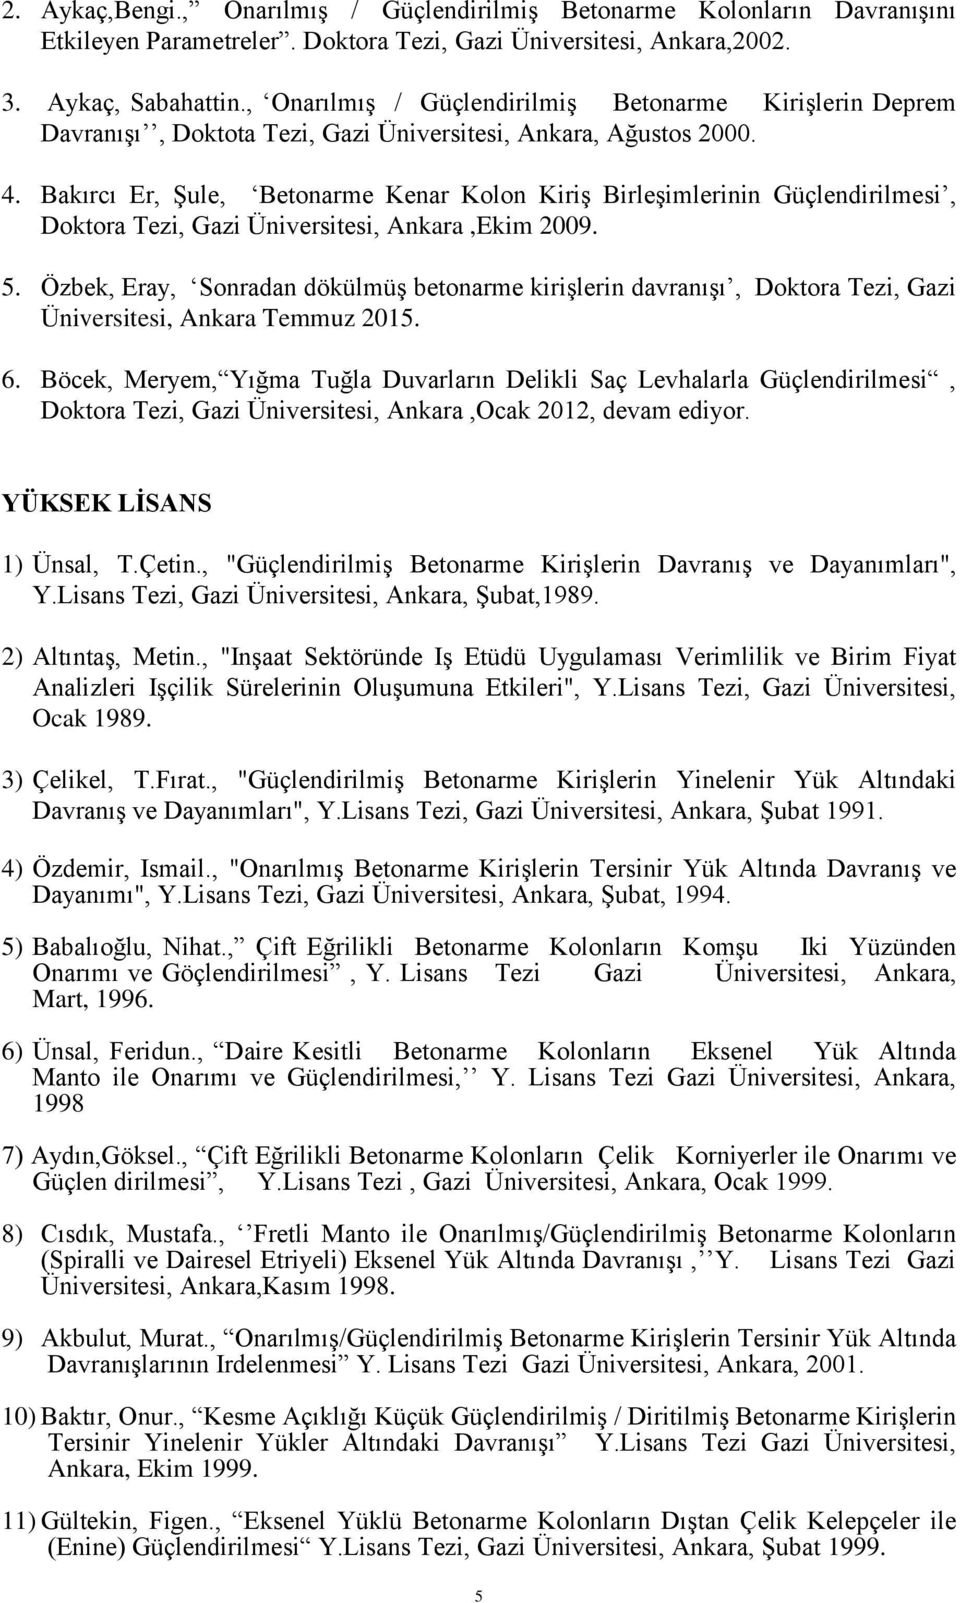 Bakırcı Er, Şule, Betonarme Kenar Kolon Kiriş Birleşimlerinin Güçlendirilmesi, Doktora Tezi, Gazi Üniversitesi, Ankara,Ekim 2009. 5.